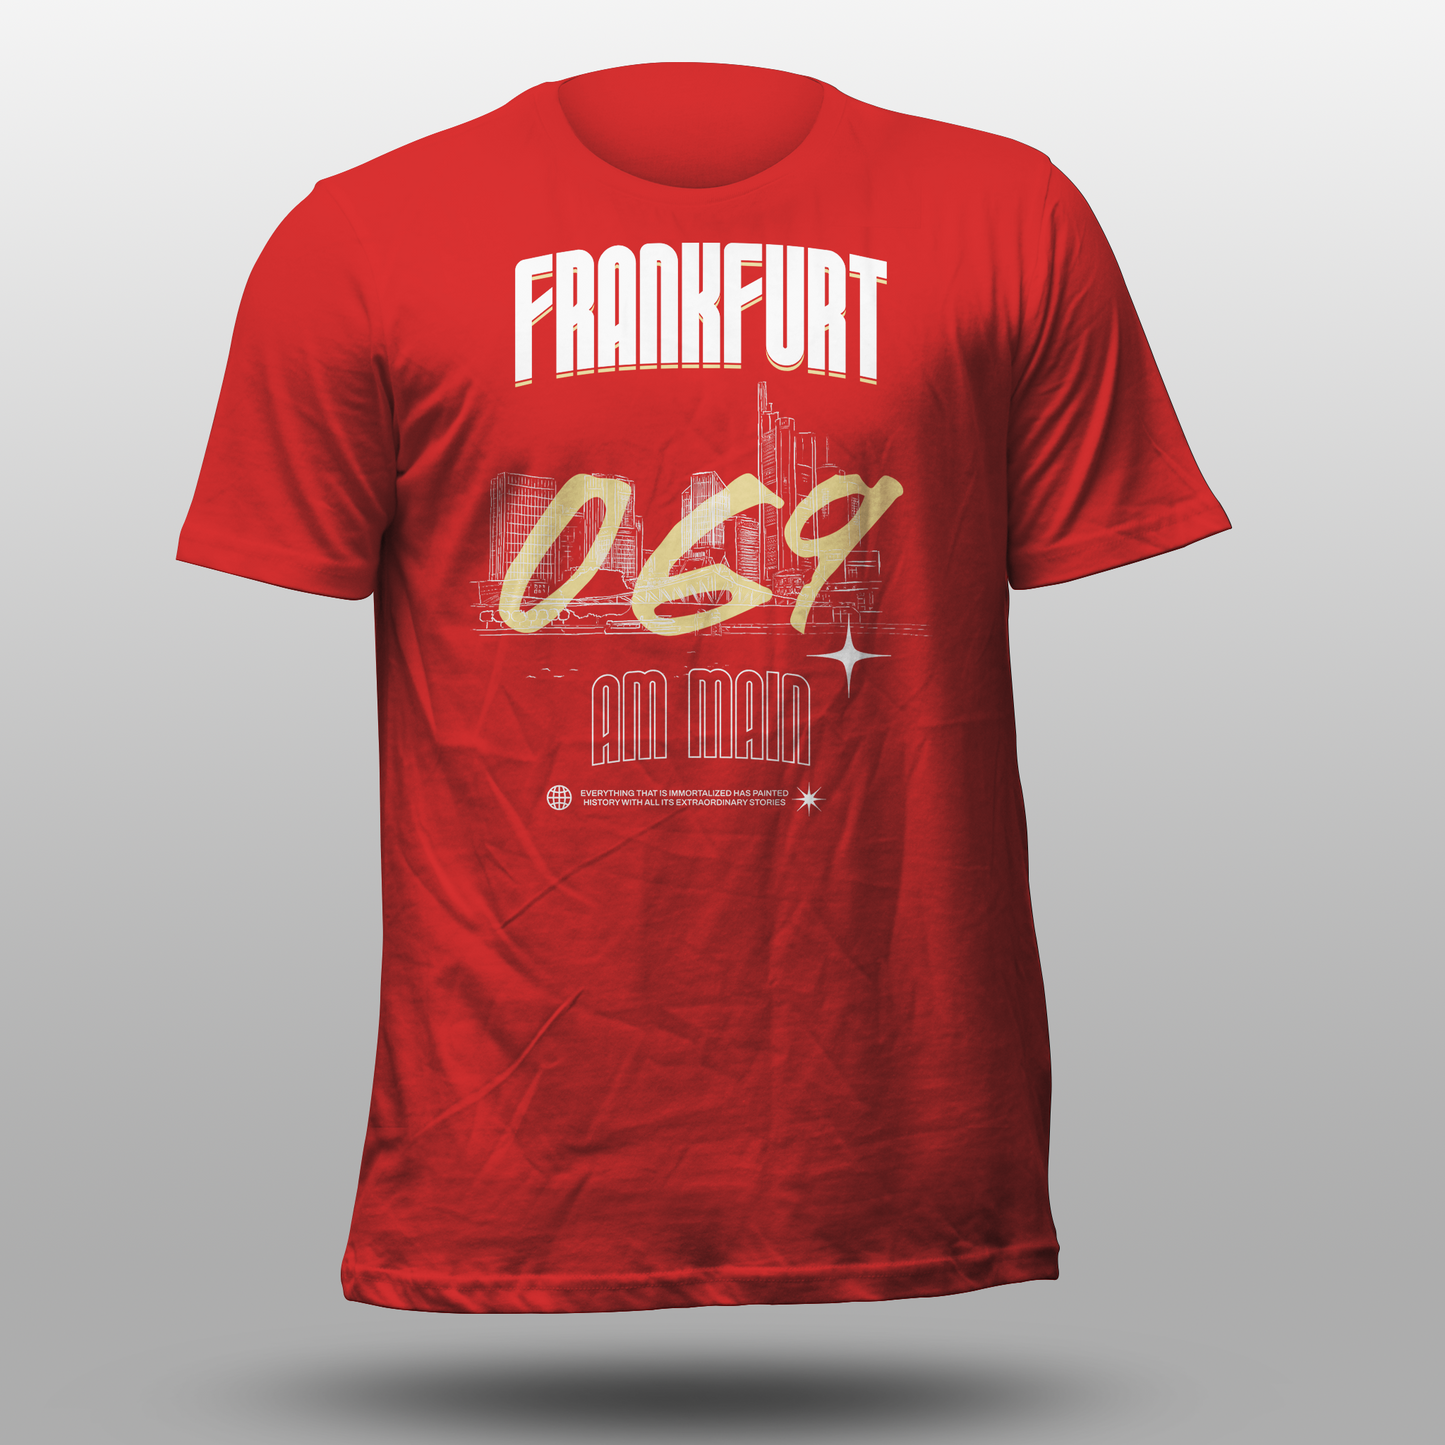 T-Shirt "Frankfurt"